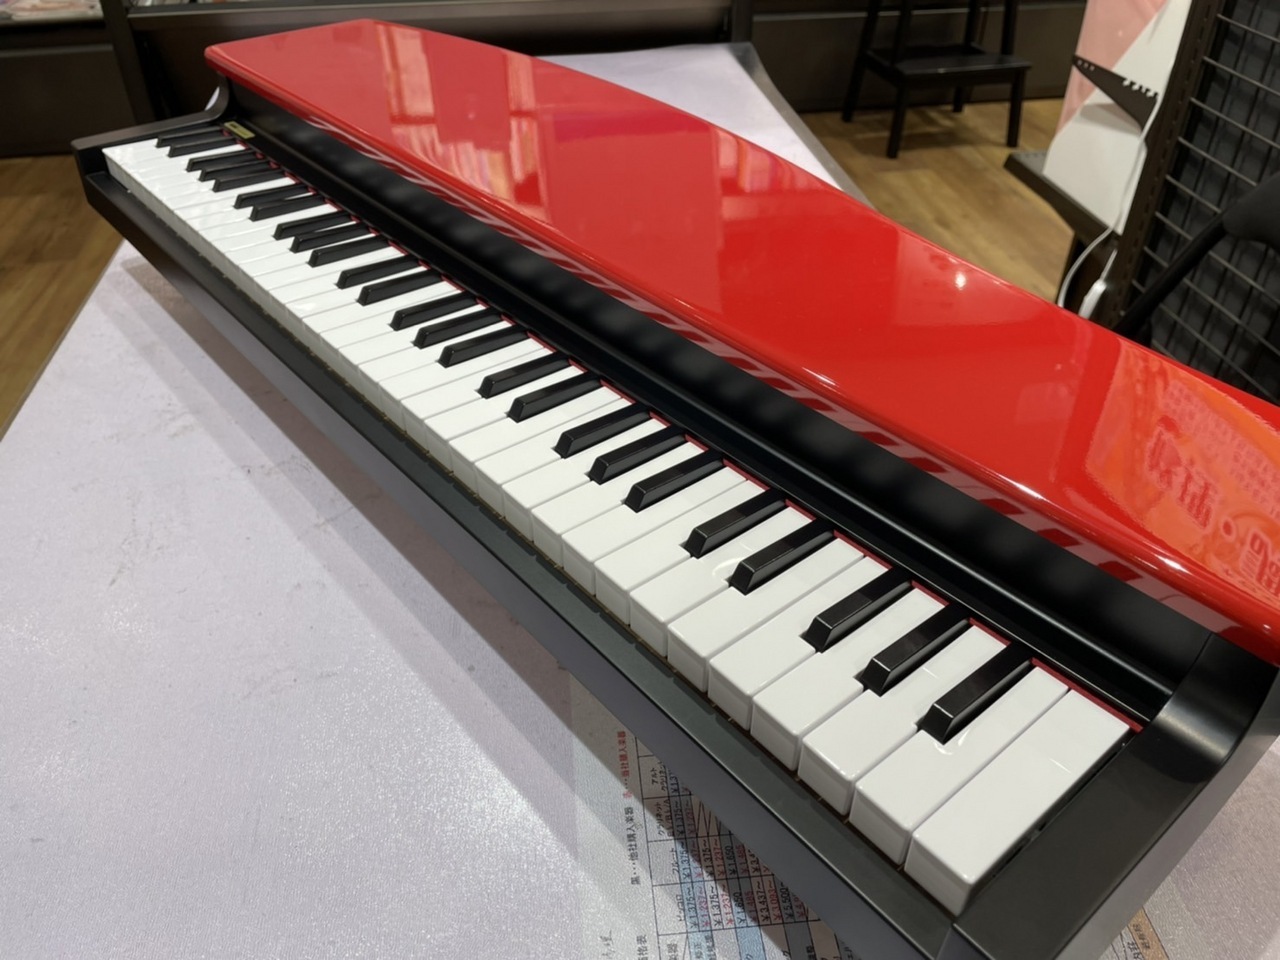 KORG MICROPIANO マイクロピアノ ミニ鍵盤61鍵 ブラック 61曲のデモソング内蔵 自動演奏可能 wgteh8f